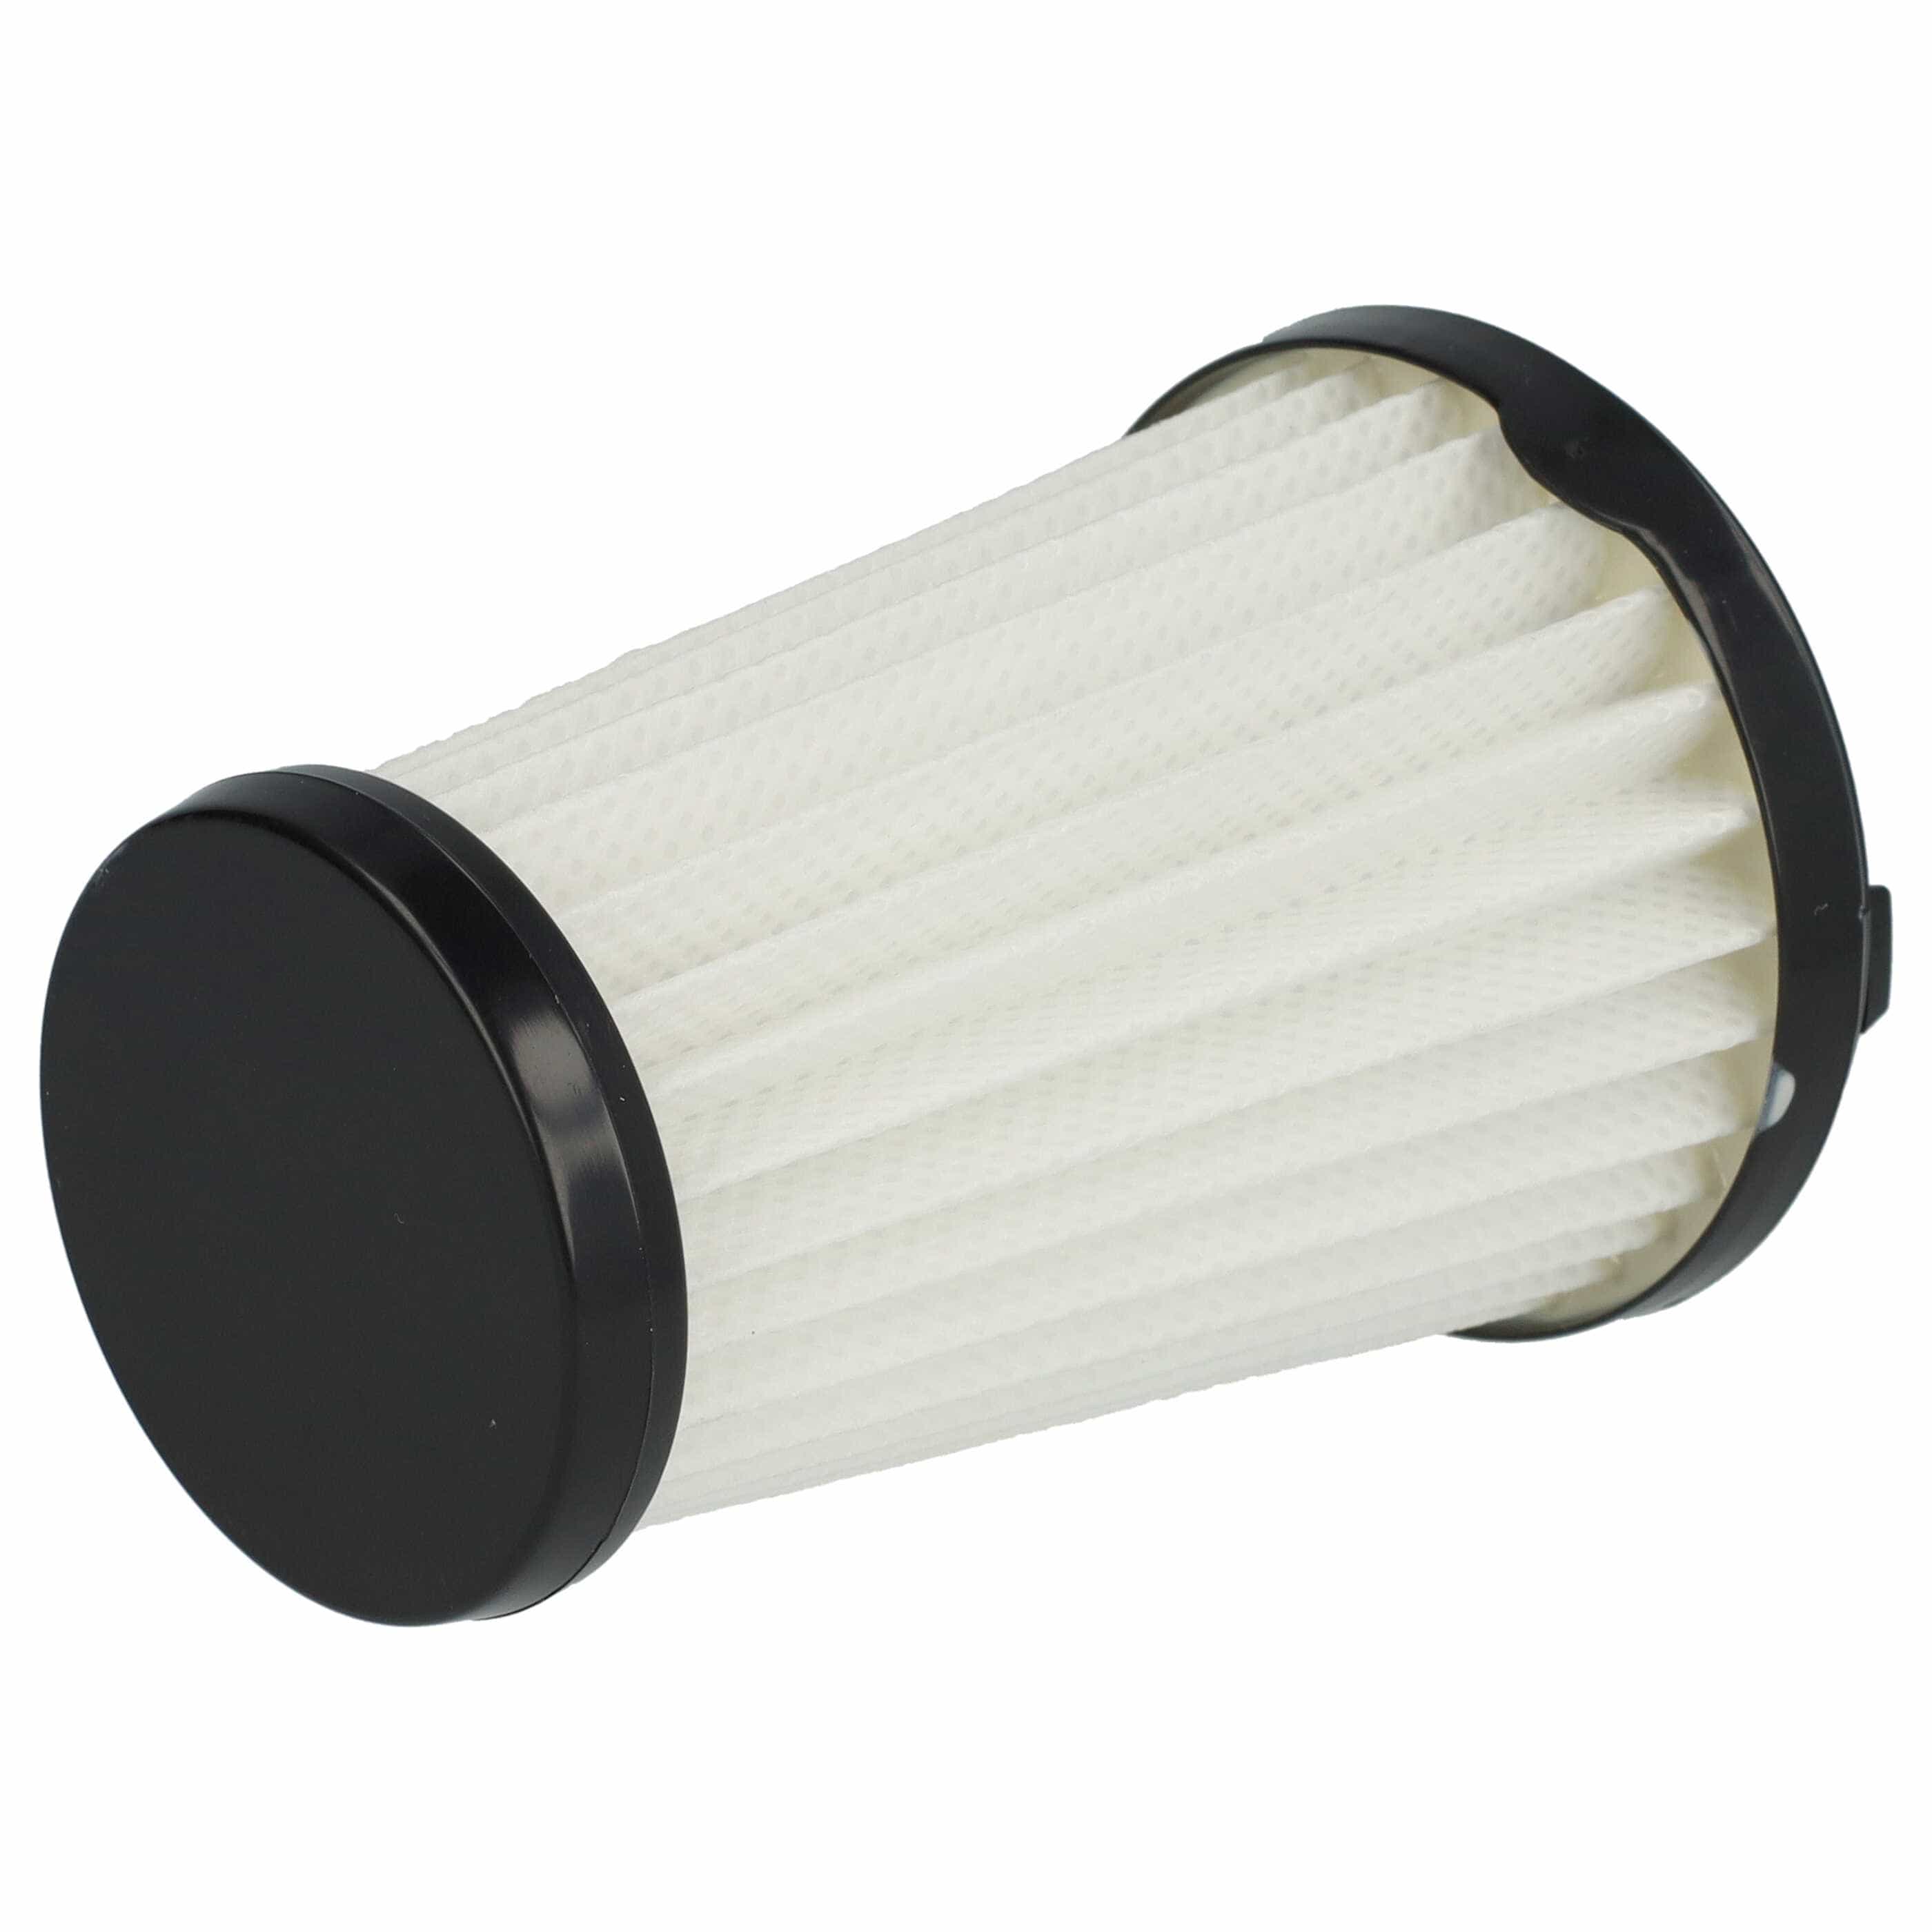 Filtr do odkurzacza AEG zamiennik AEG AEF150, 9001683755, 90094073100 - filtr lamelowy, czarny / biały